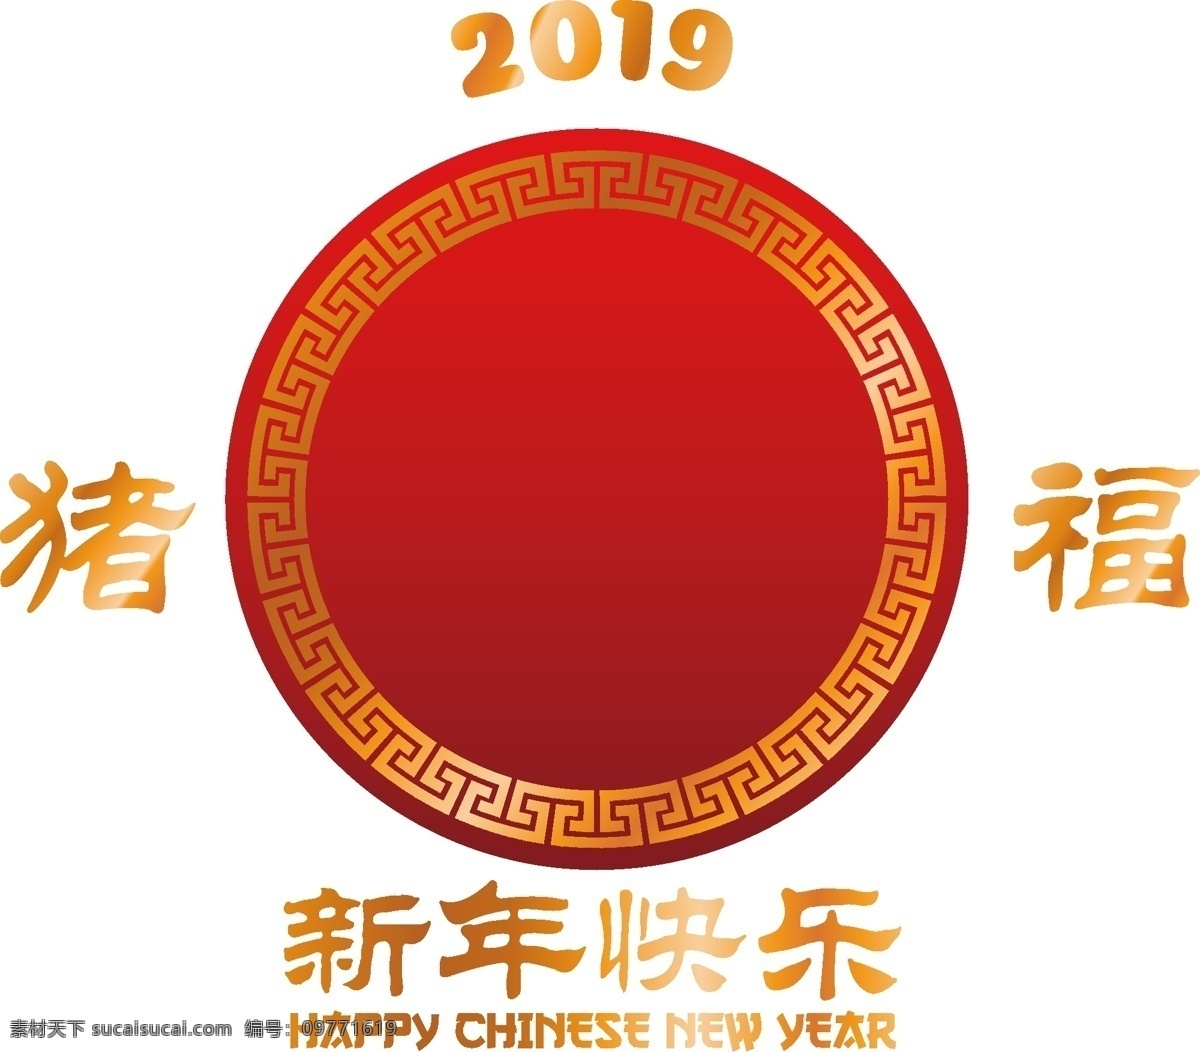 卡通 花纹 新年 快乐 元素 中国风 喜庆 新年快乐 手绘 红色几何 团圆 猪年 ai元素 矢量元素